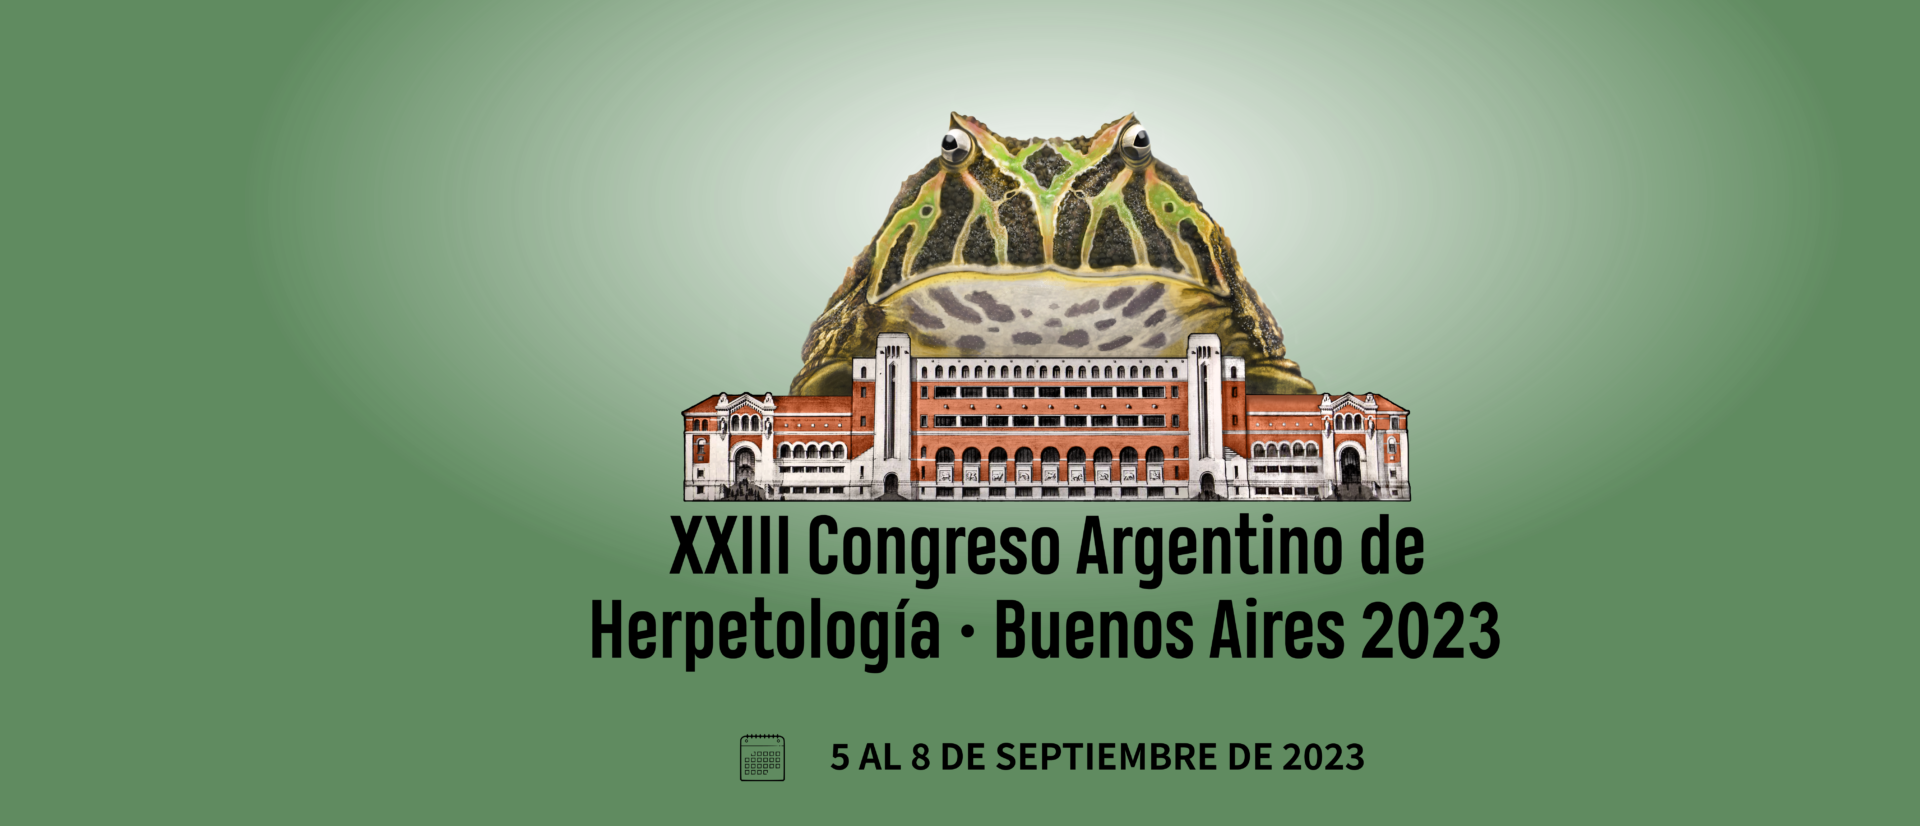 XXIII Congreso Argentino de Herpetología